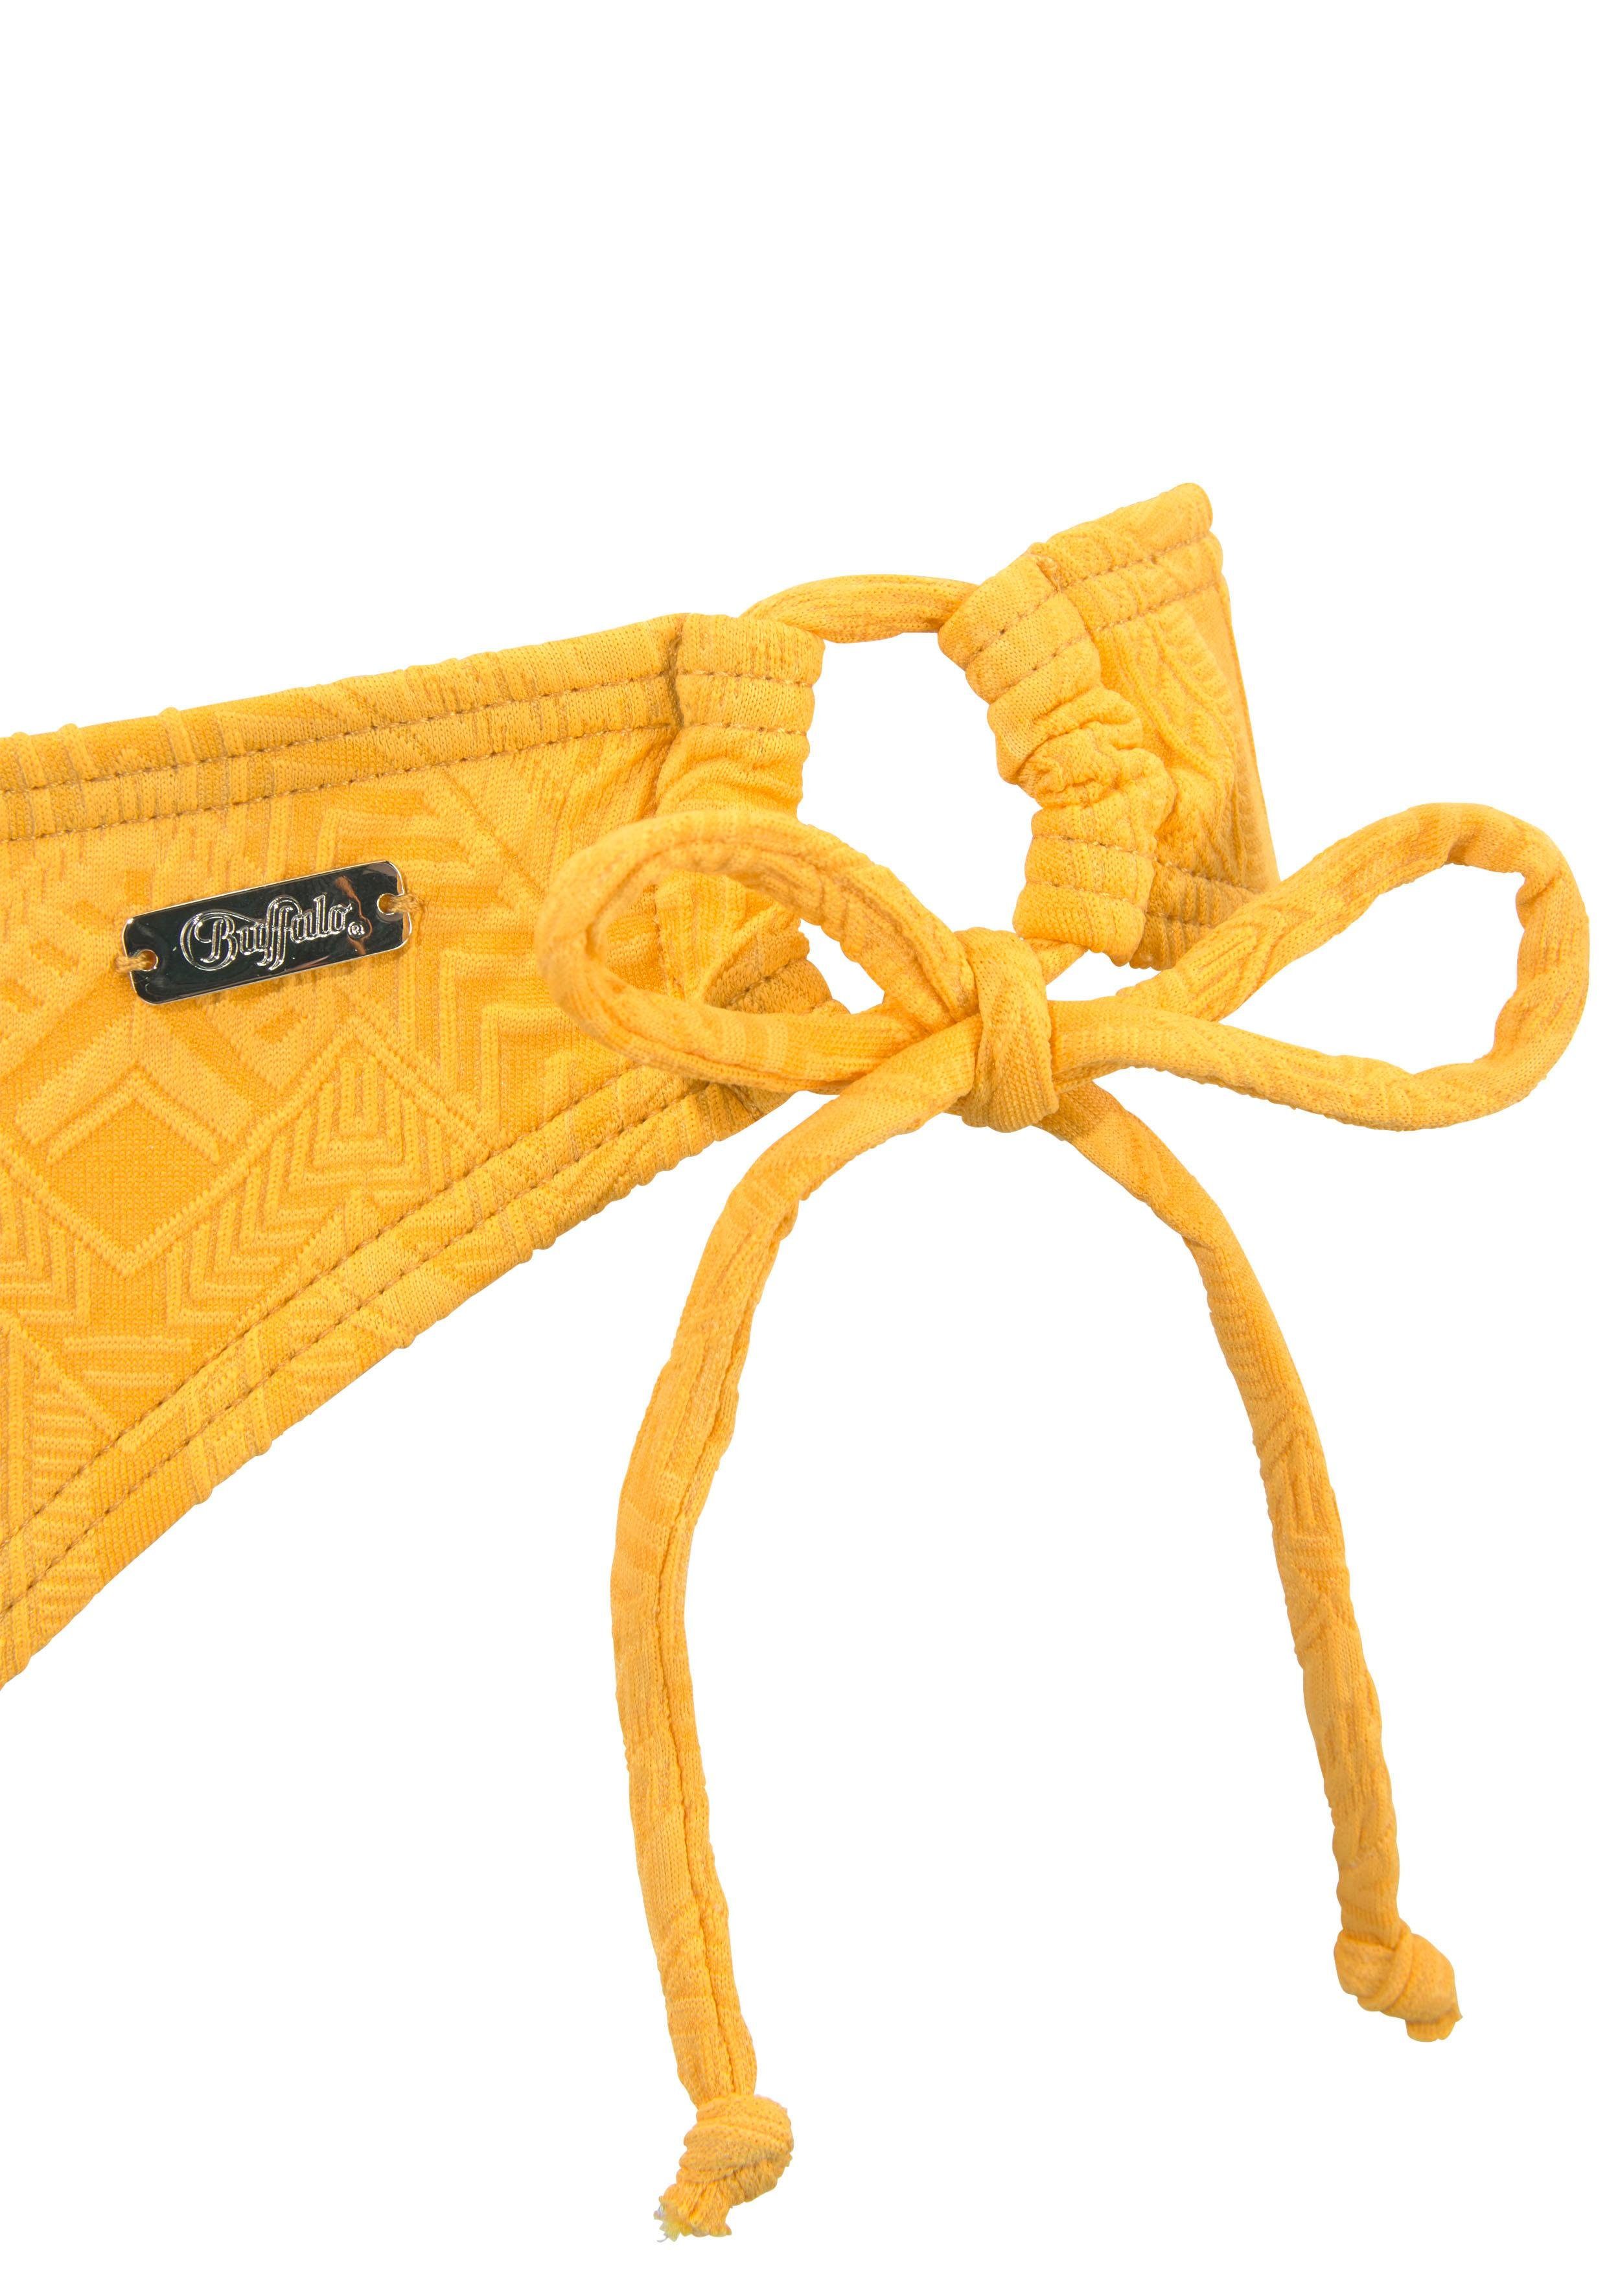 gelb Triangel-Bikini mit Struktur modischer Buffalo